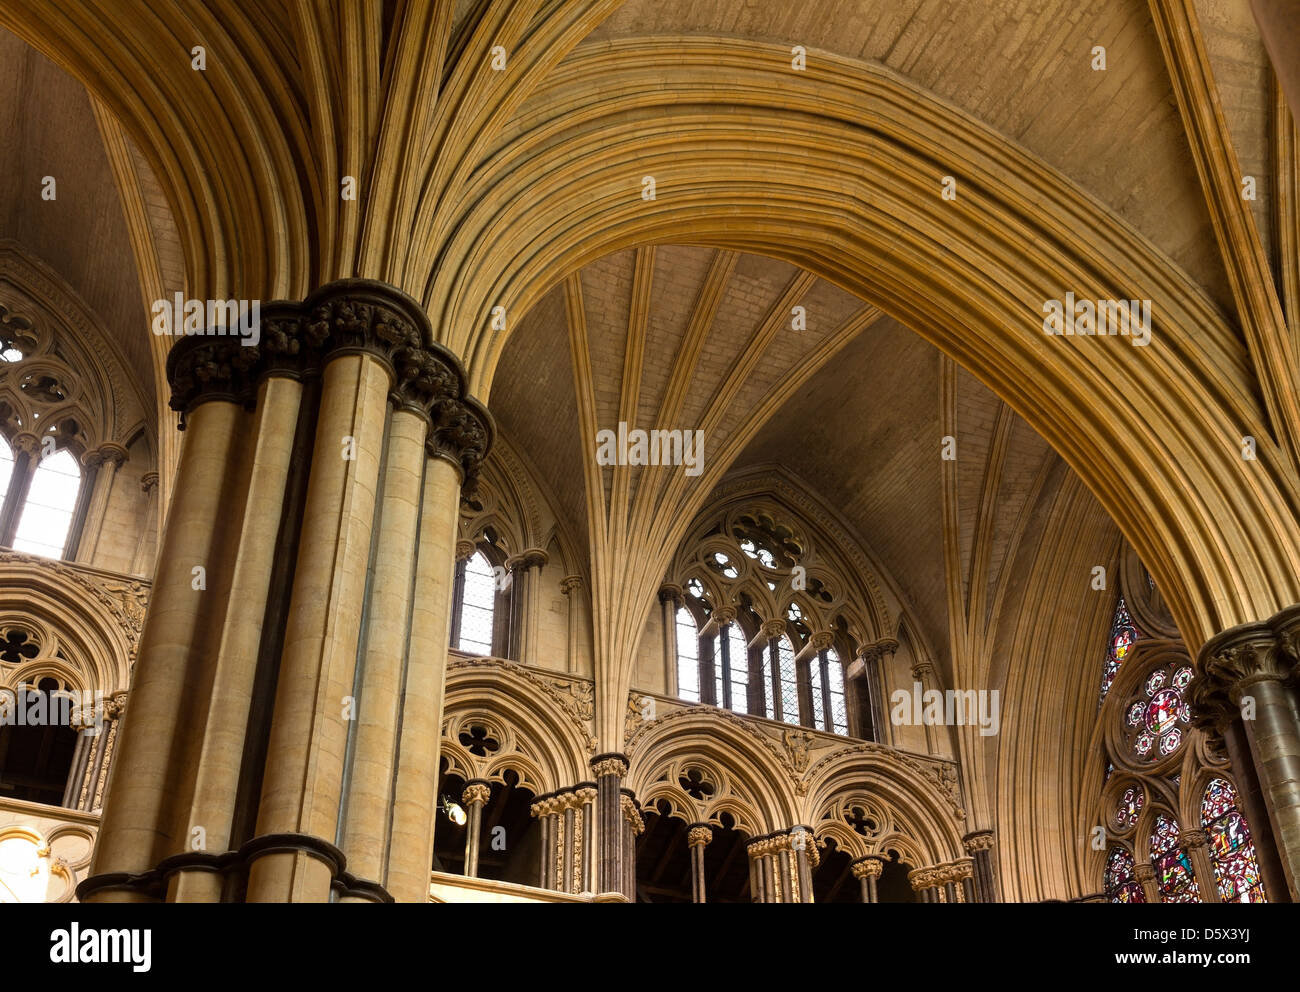 Señaló la masonería arcos góticos, pilares de piedra y techos abovedados, la Catedral de Lincoln, Lincolnshire, Inglaterra, Reino Unido. Foto de stock